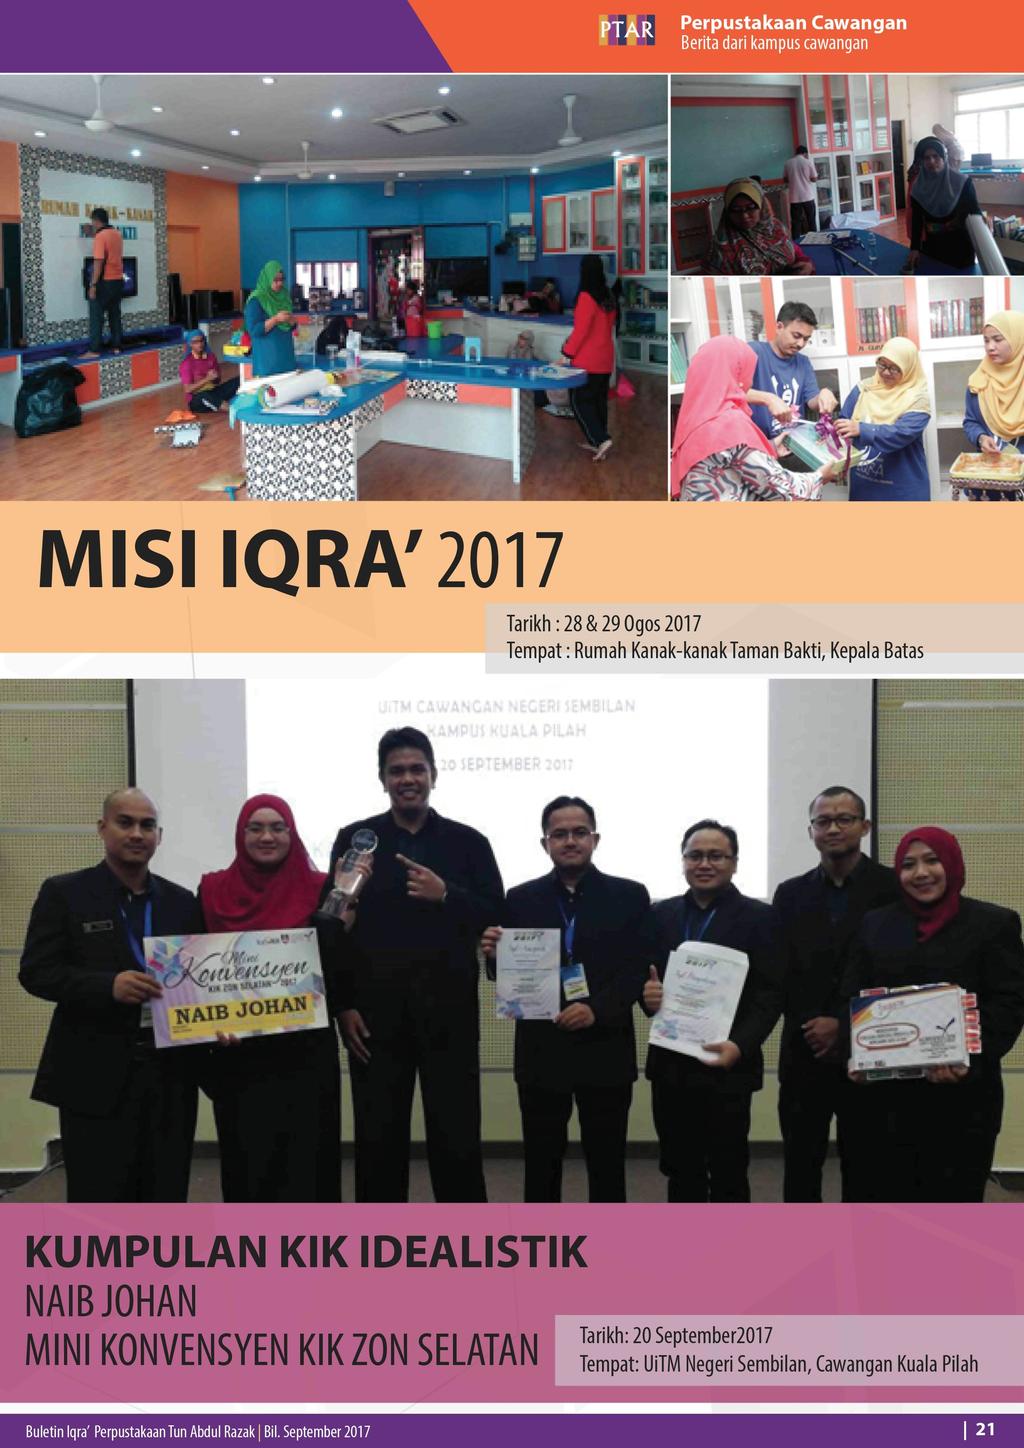 Perpustakaan Cawangan Berita dari kampus cawangan MISIIQRA'2017 Tarikh: 28 & 29 Ogos 2017 Tempat: Rumah Kanak-kanakTaman Bakti, Kepala